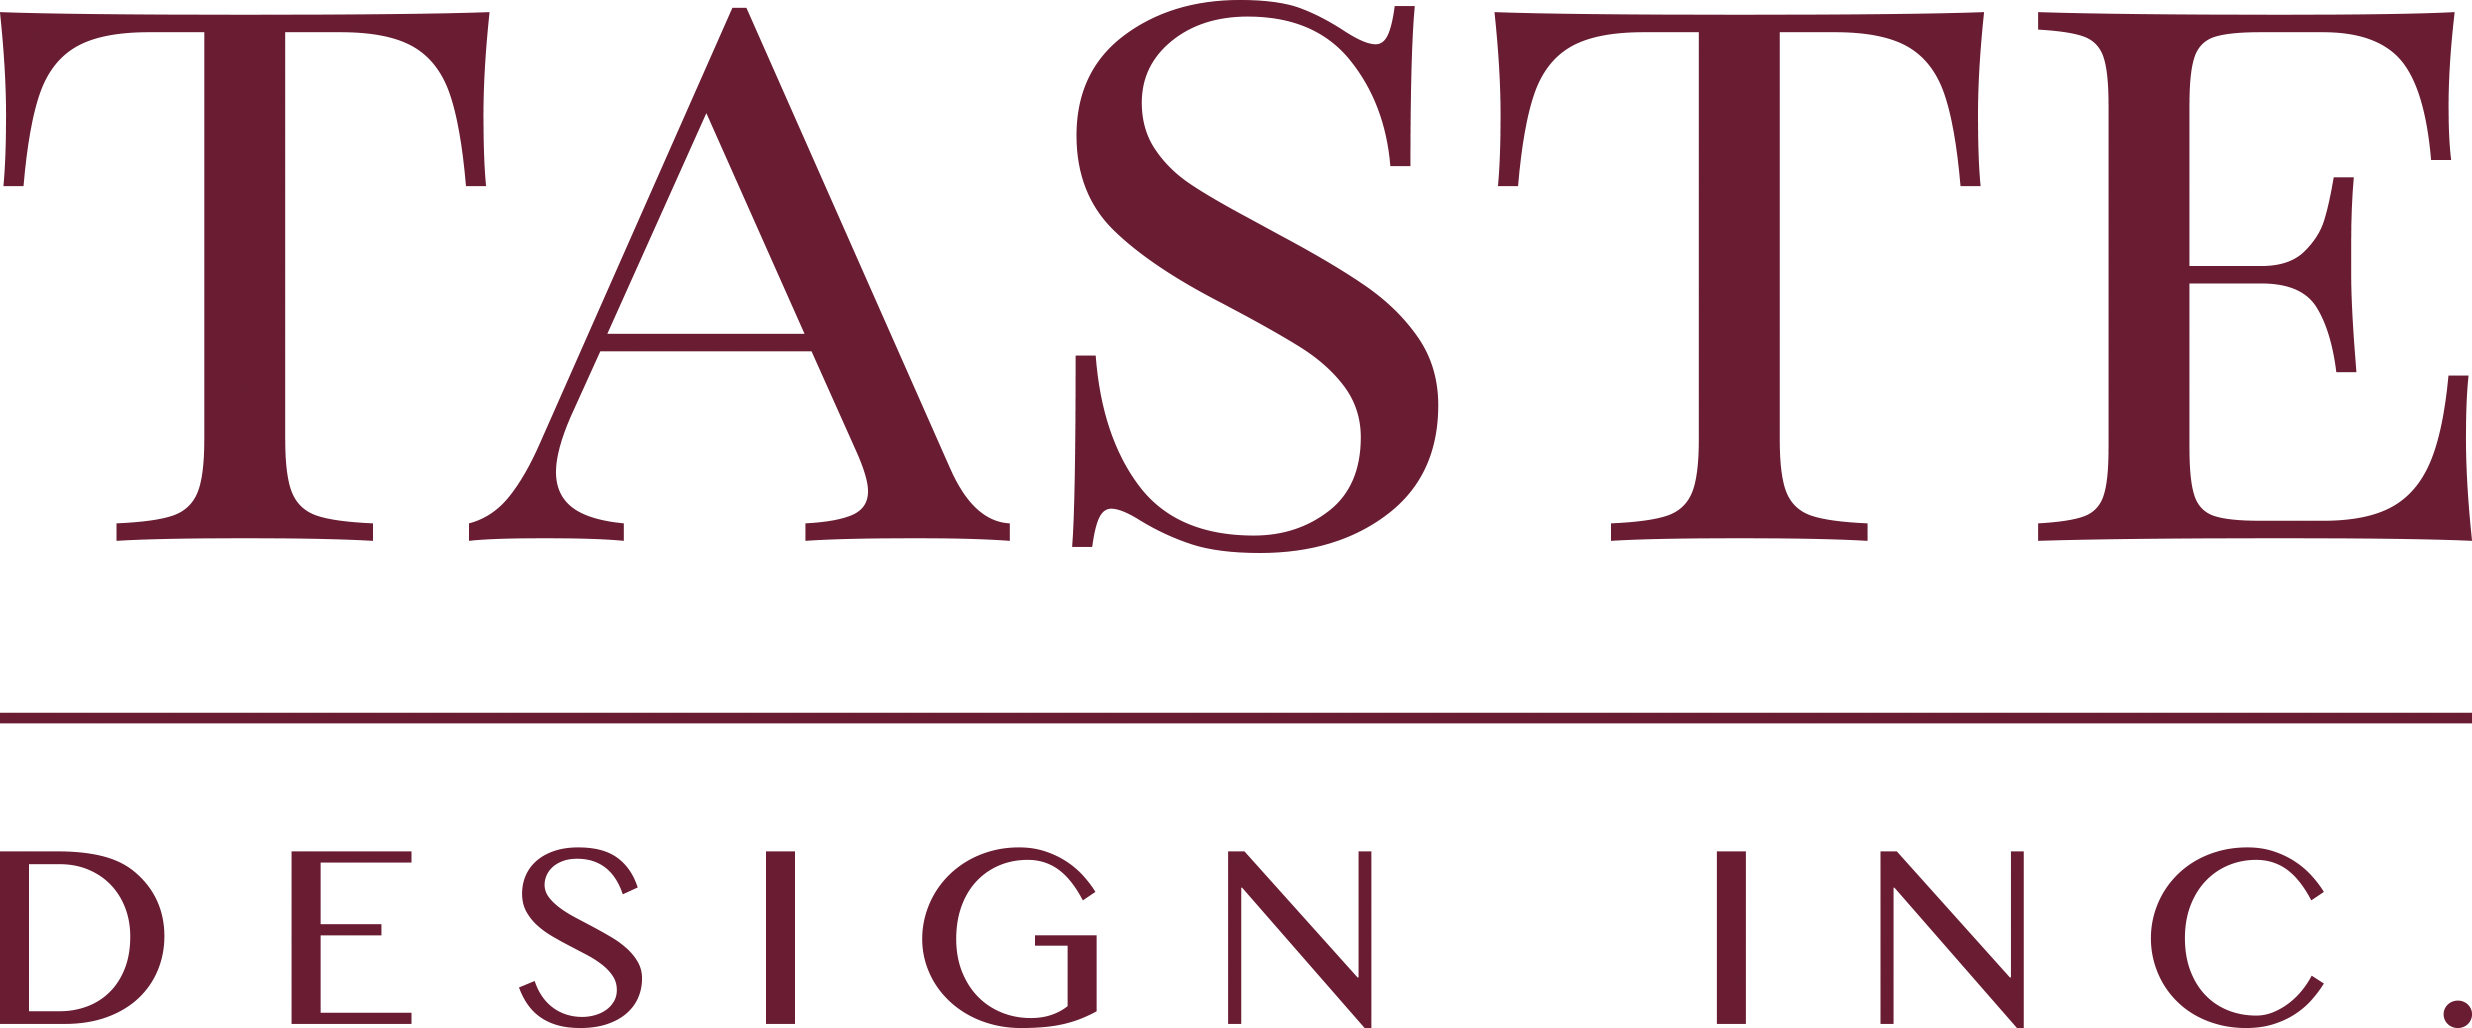 Taste Design logo: Dark red serif font reading "TASTE" above a line and smaller words "DESIGN INC."